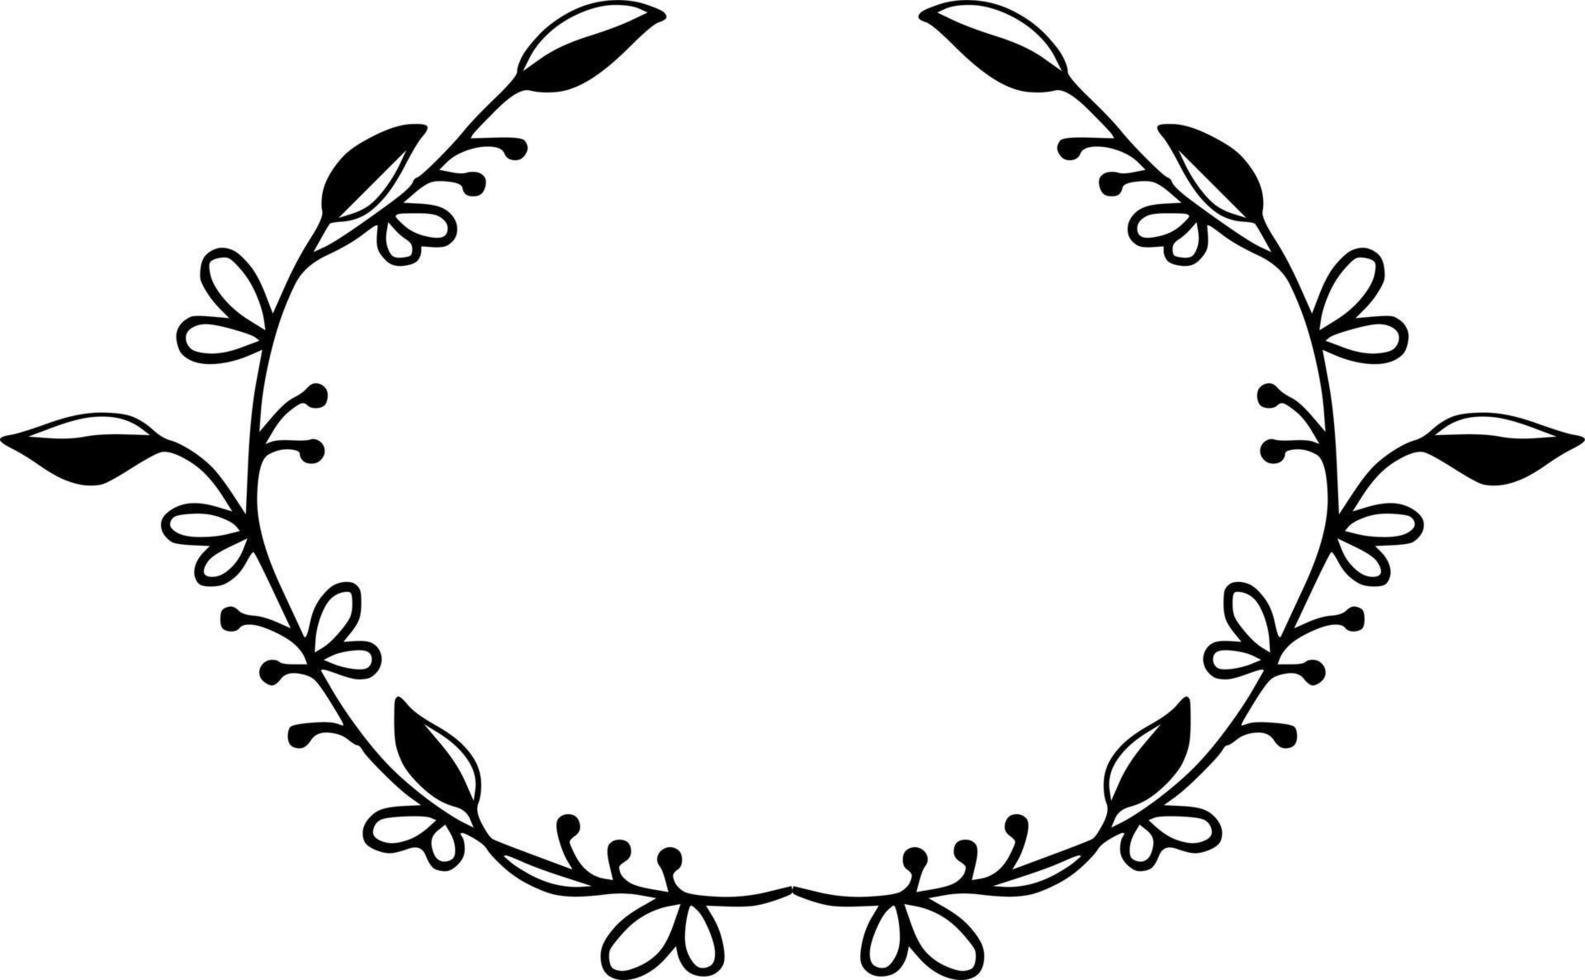 Flower wreath doodle vector